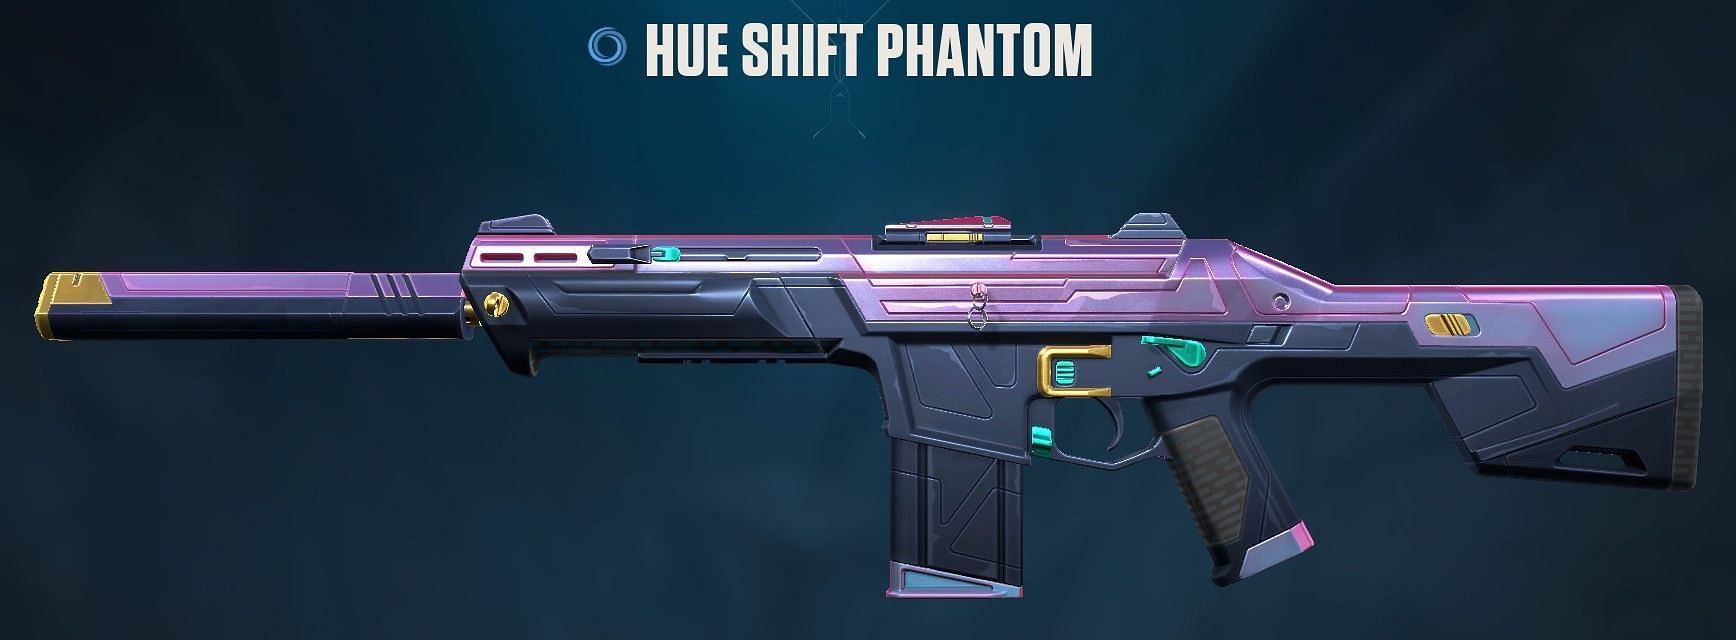 Hue Shift Phantom (Image via Riot Games)